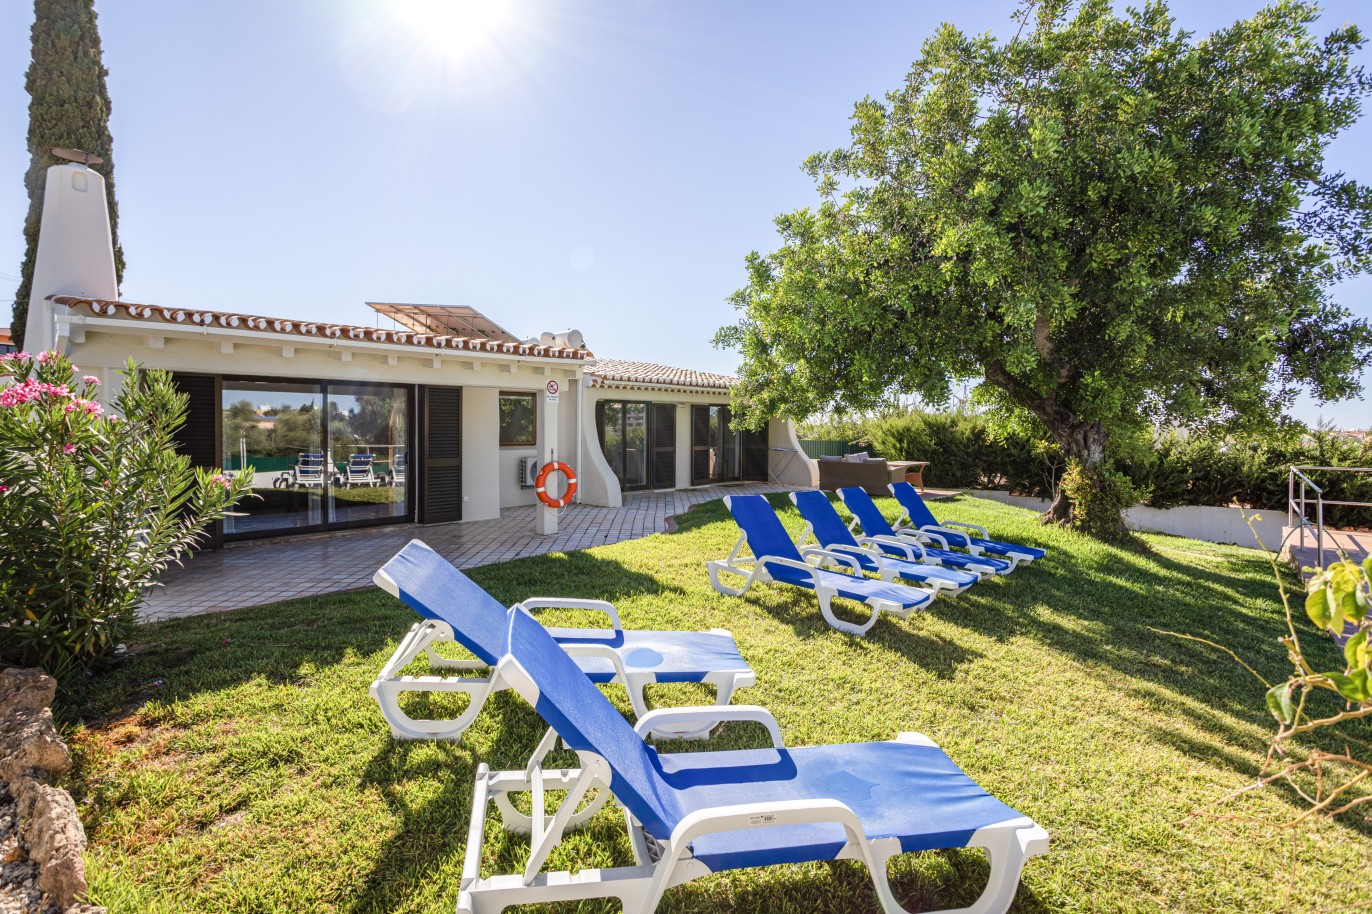 Moradia V4 com piscina, para venda em Albufeira, Algarve_233610